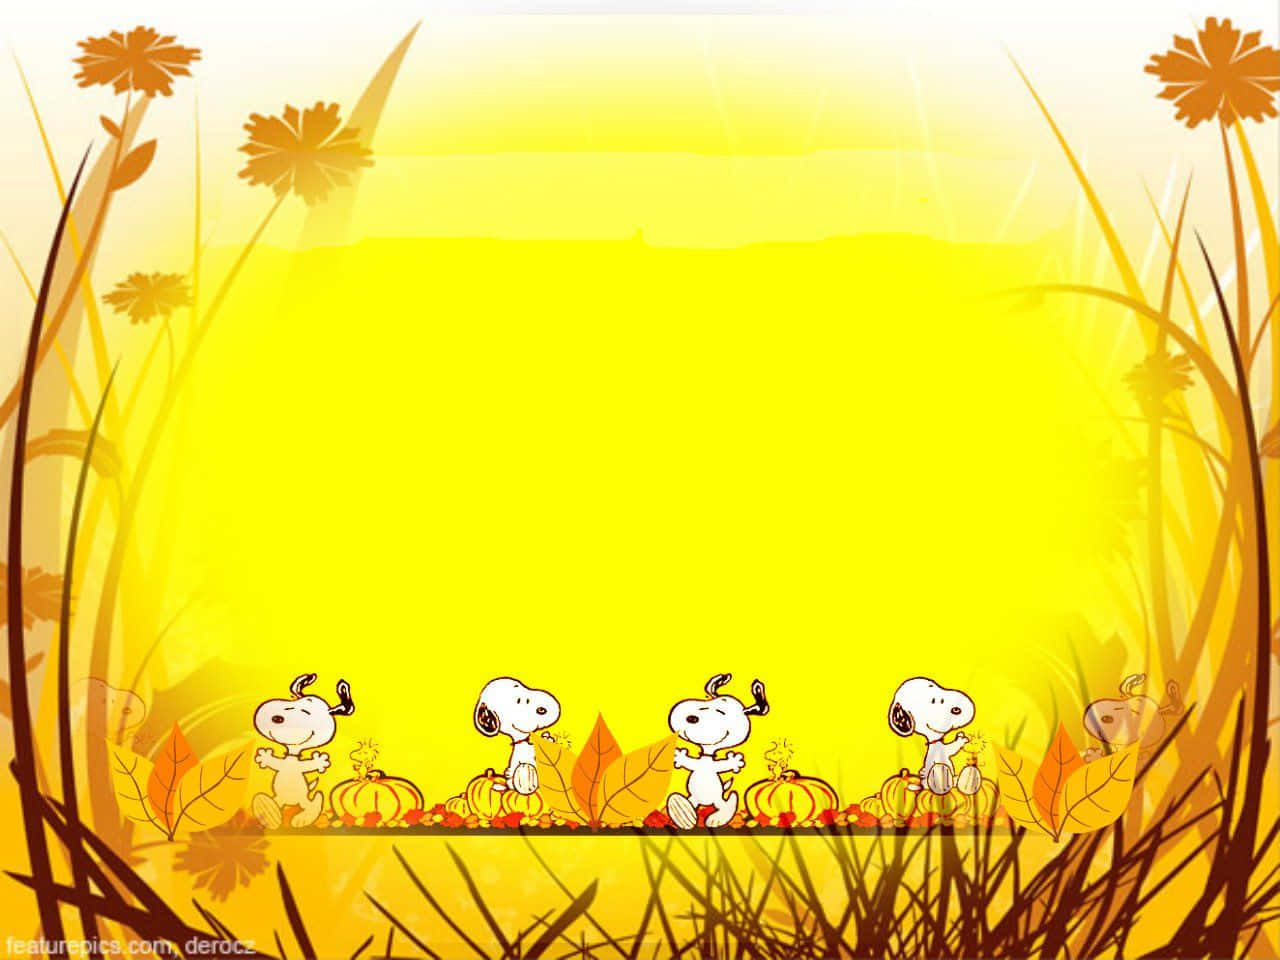 Snoopyvisar Sin Tacksamhet Denna Thanksgiving På Sin Dator Eller Mobilbakgrund. Wallpaper